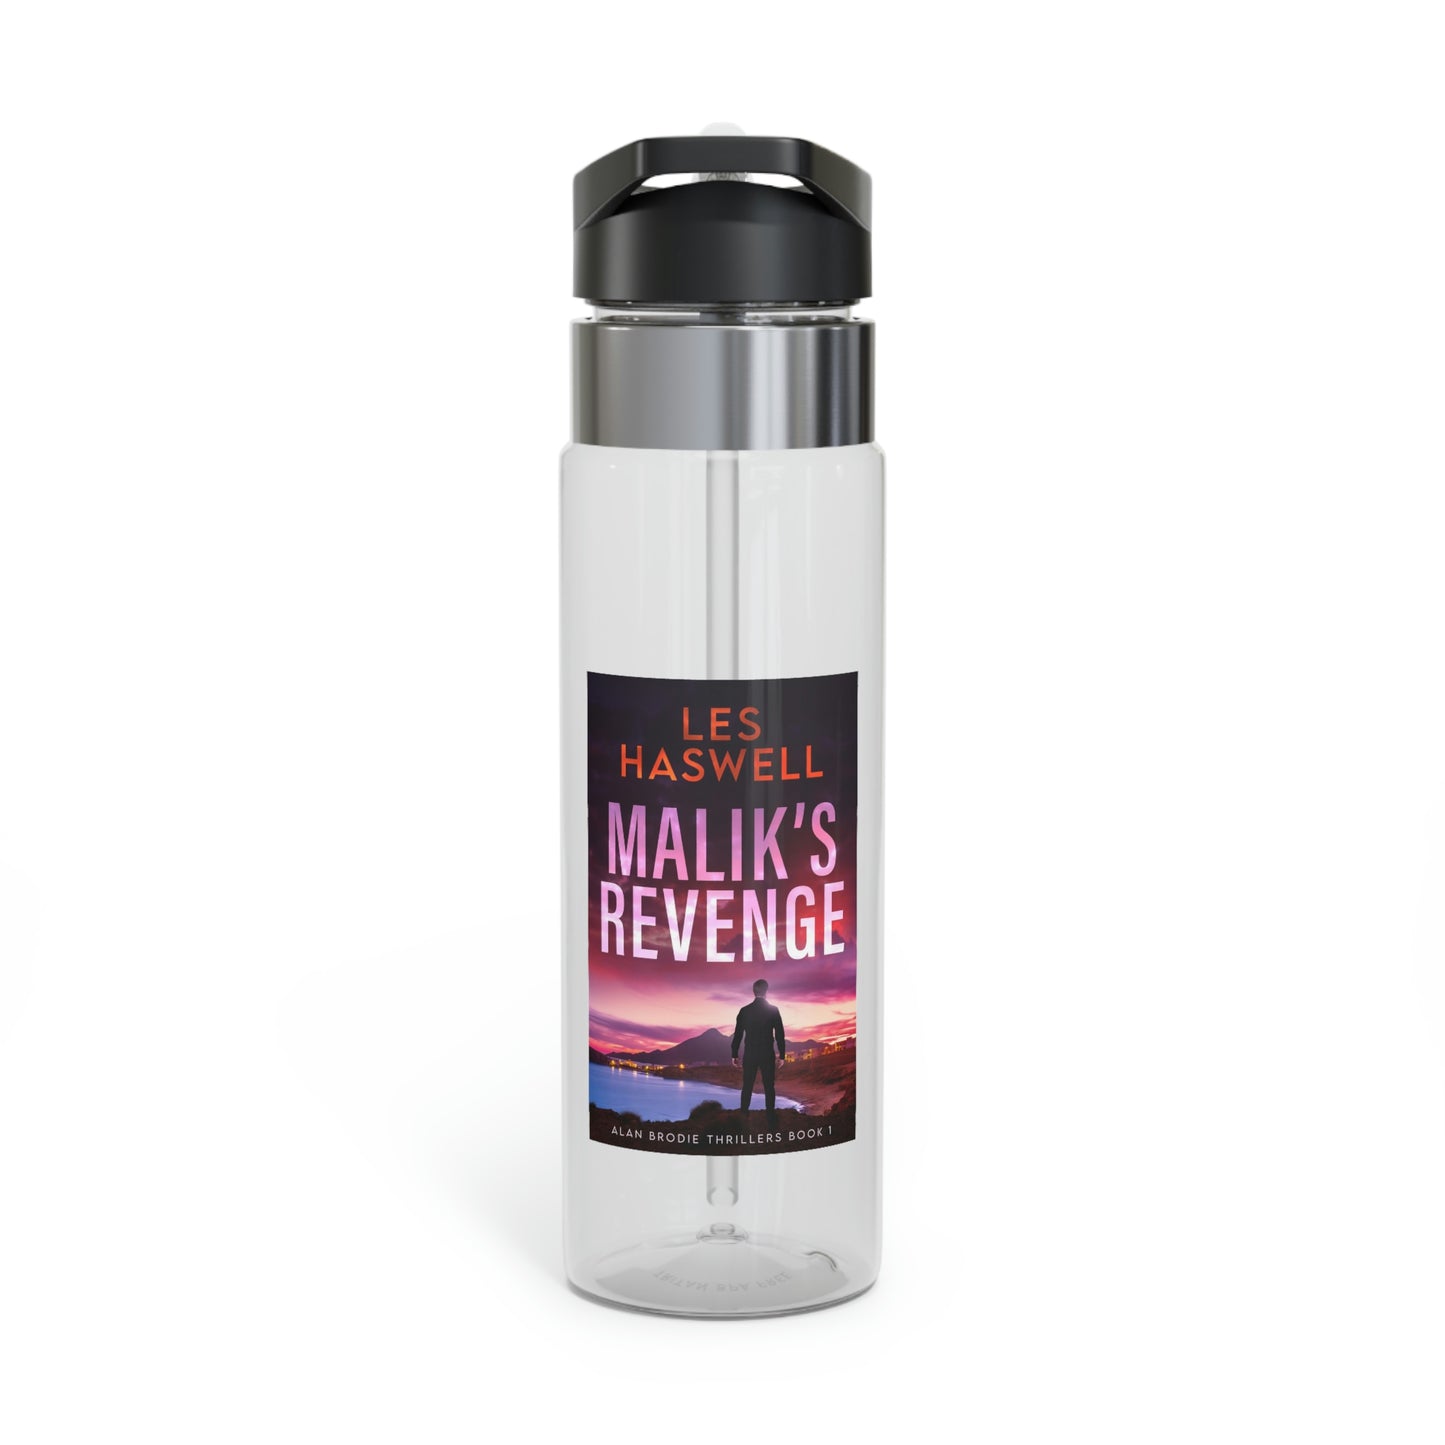 Malik's Revenge - Kensington Sport Bottle